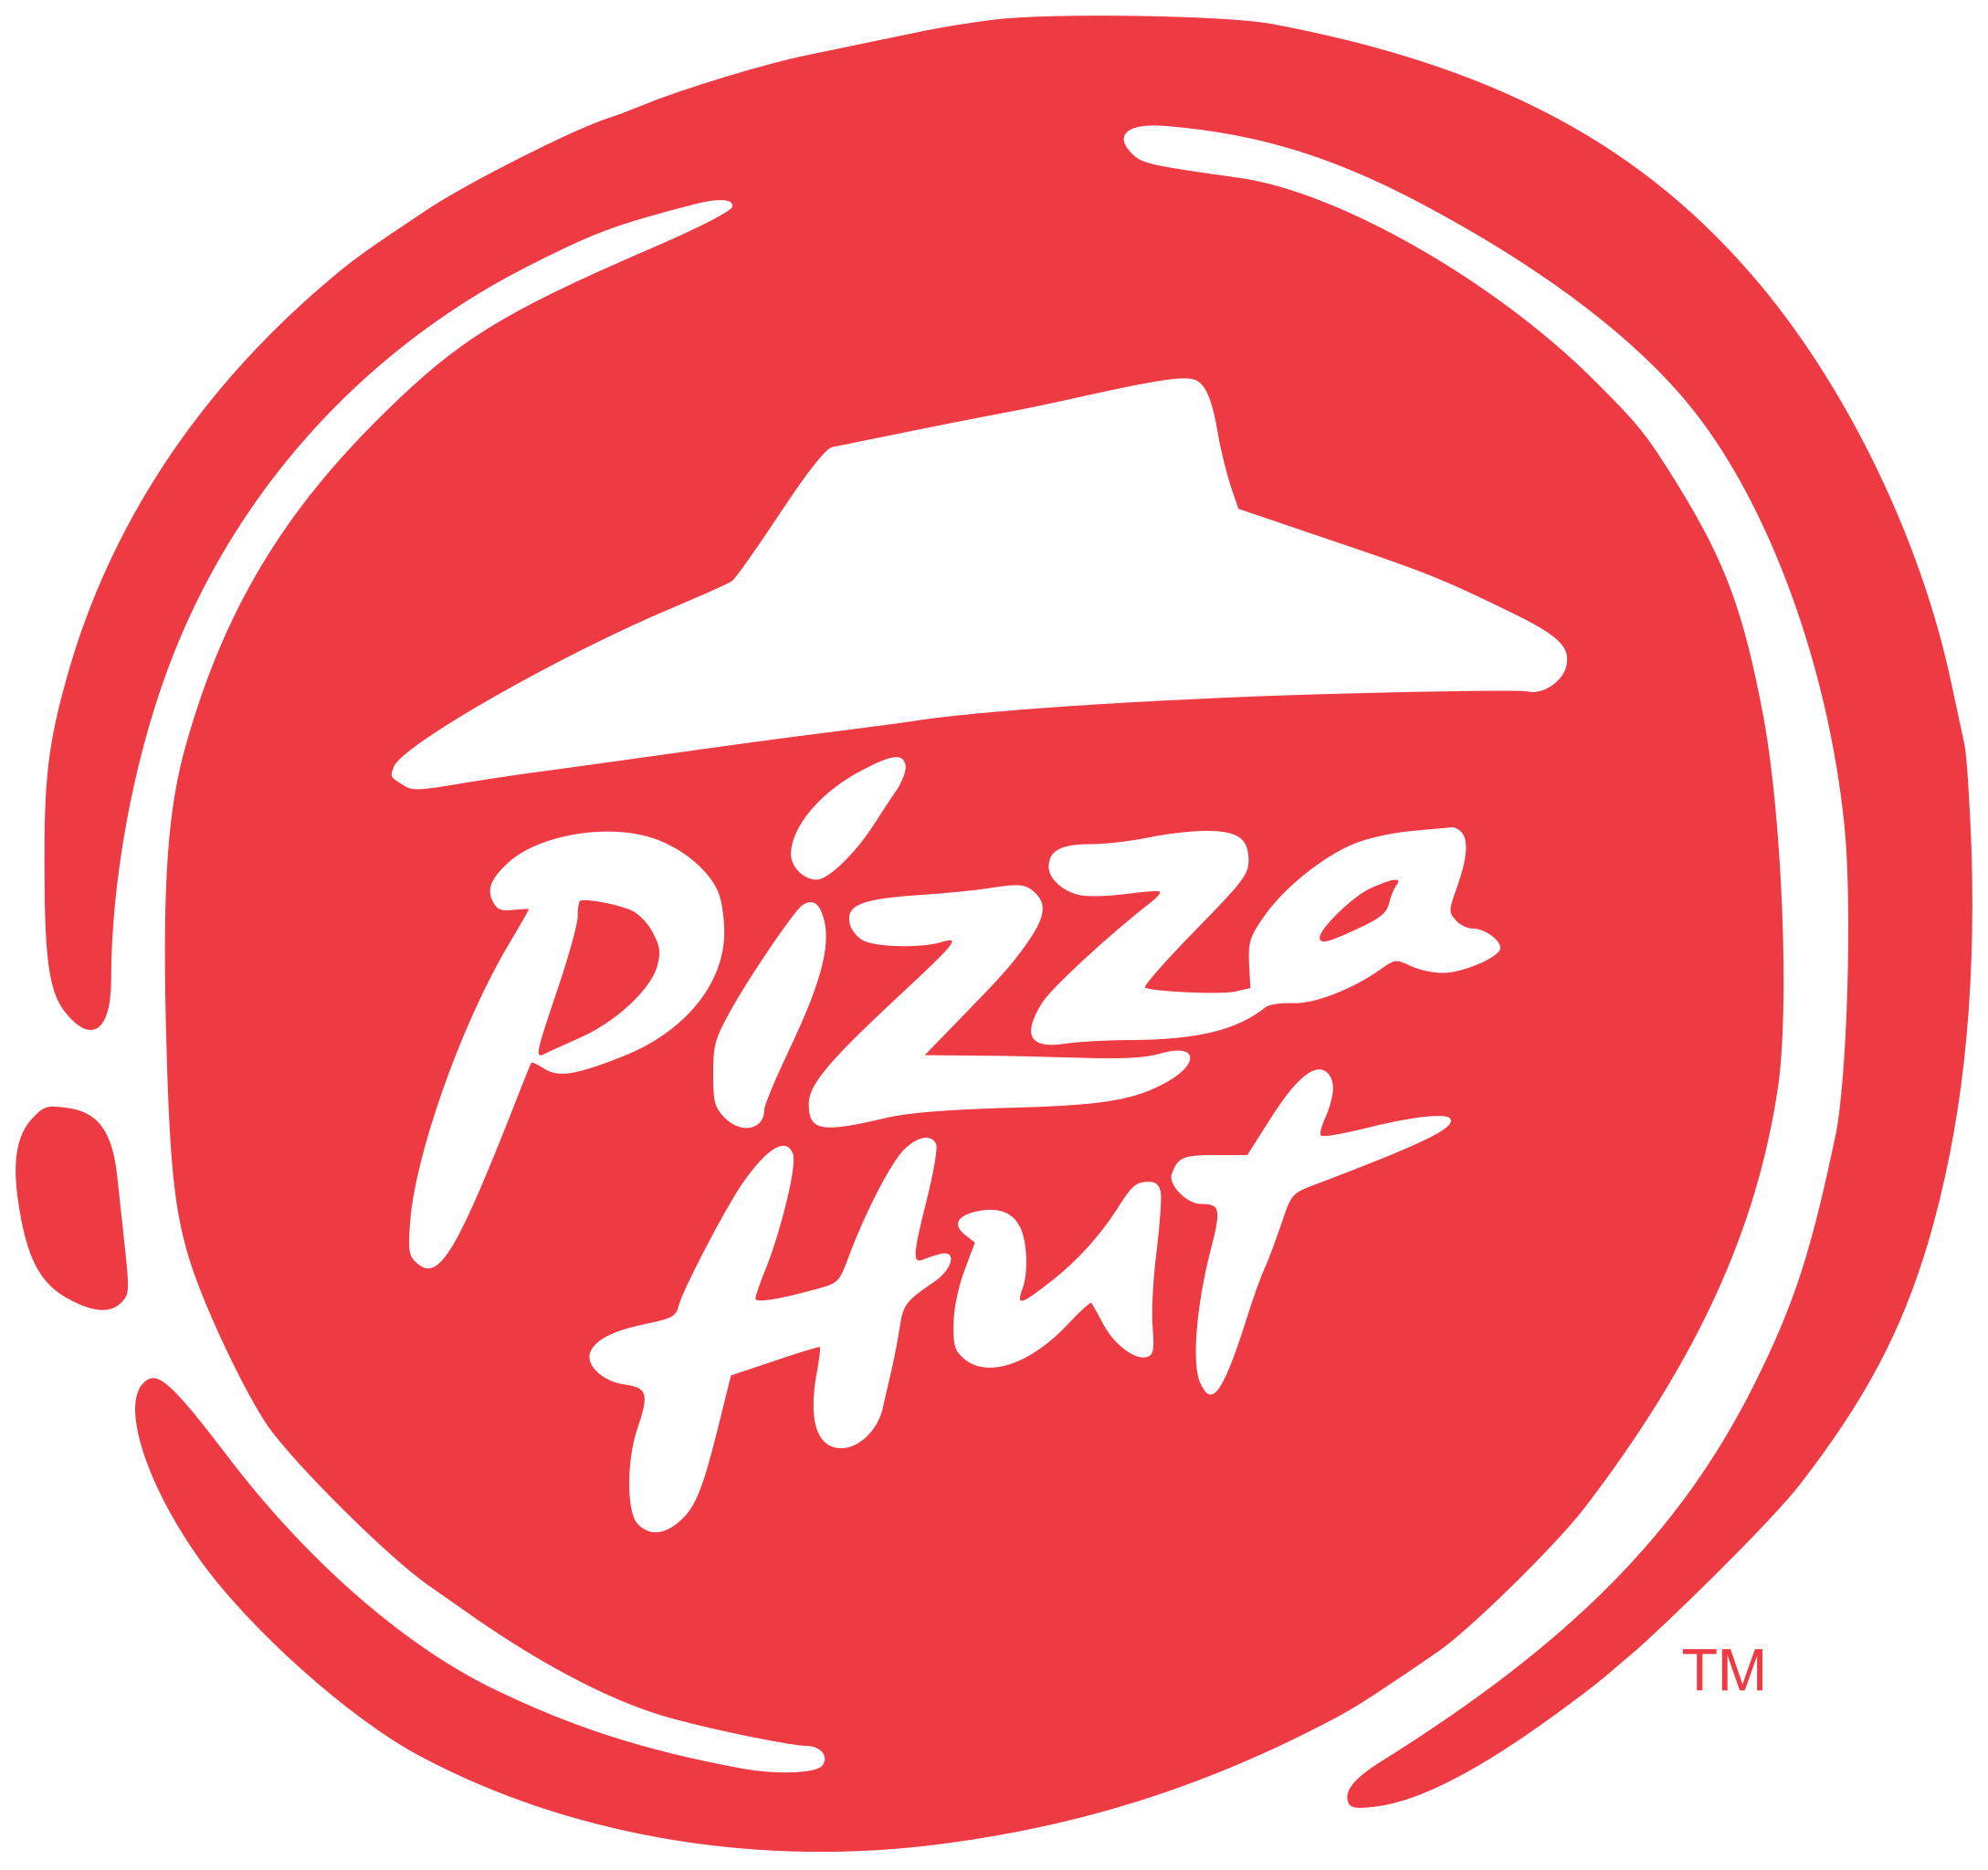 Pizza Hut images